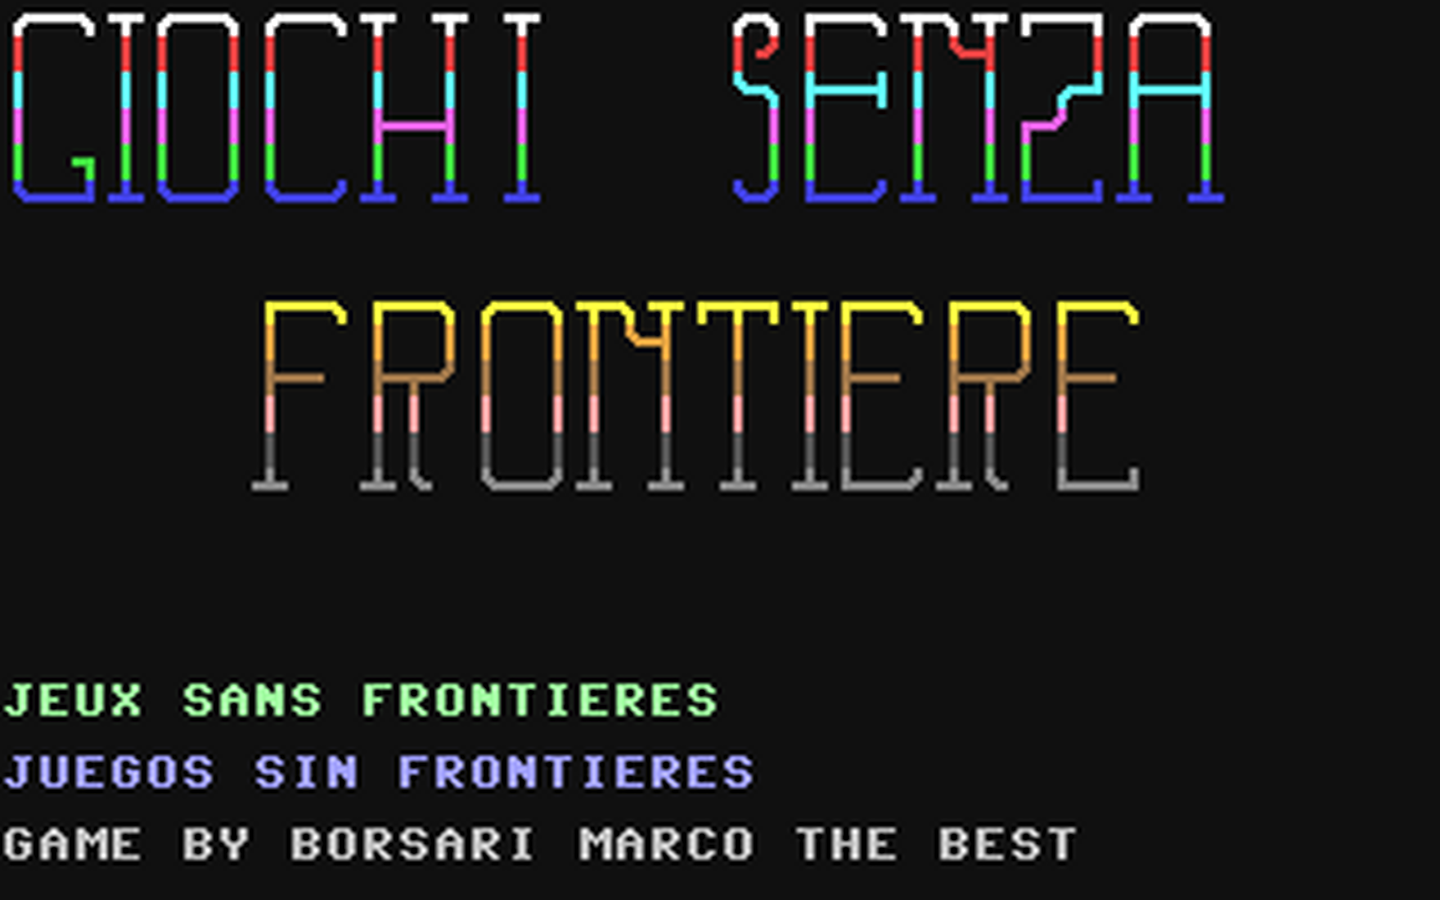 C64 GameBase Giochi_Senza_Frontiere